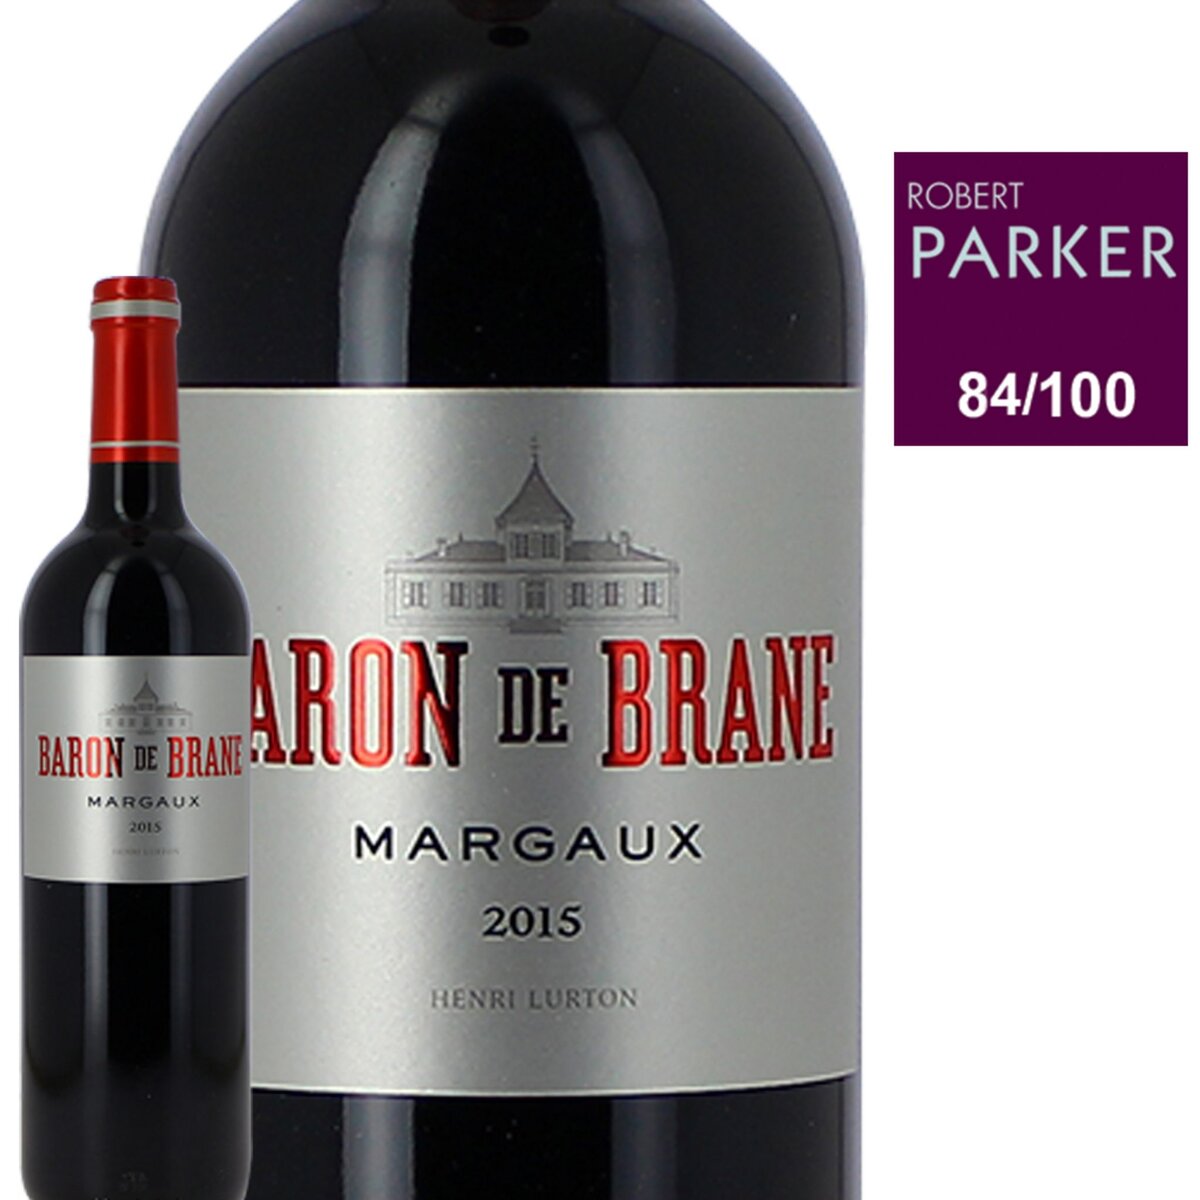 Baron de Brane Margaux second vin Rouge 2015